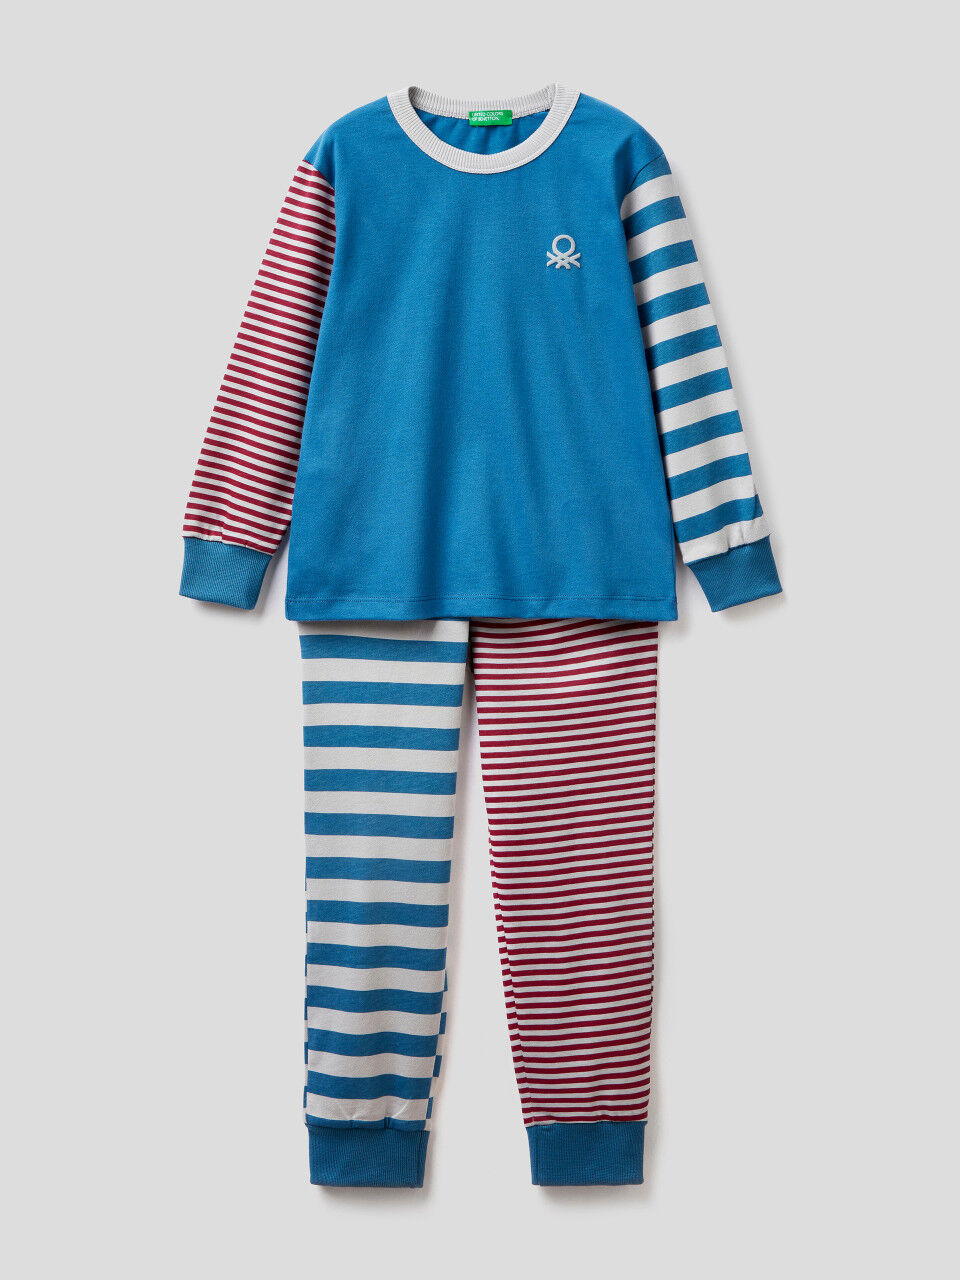 Striped 100% cotton pyjamas